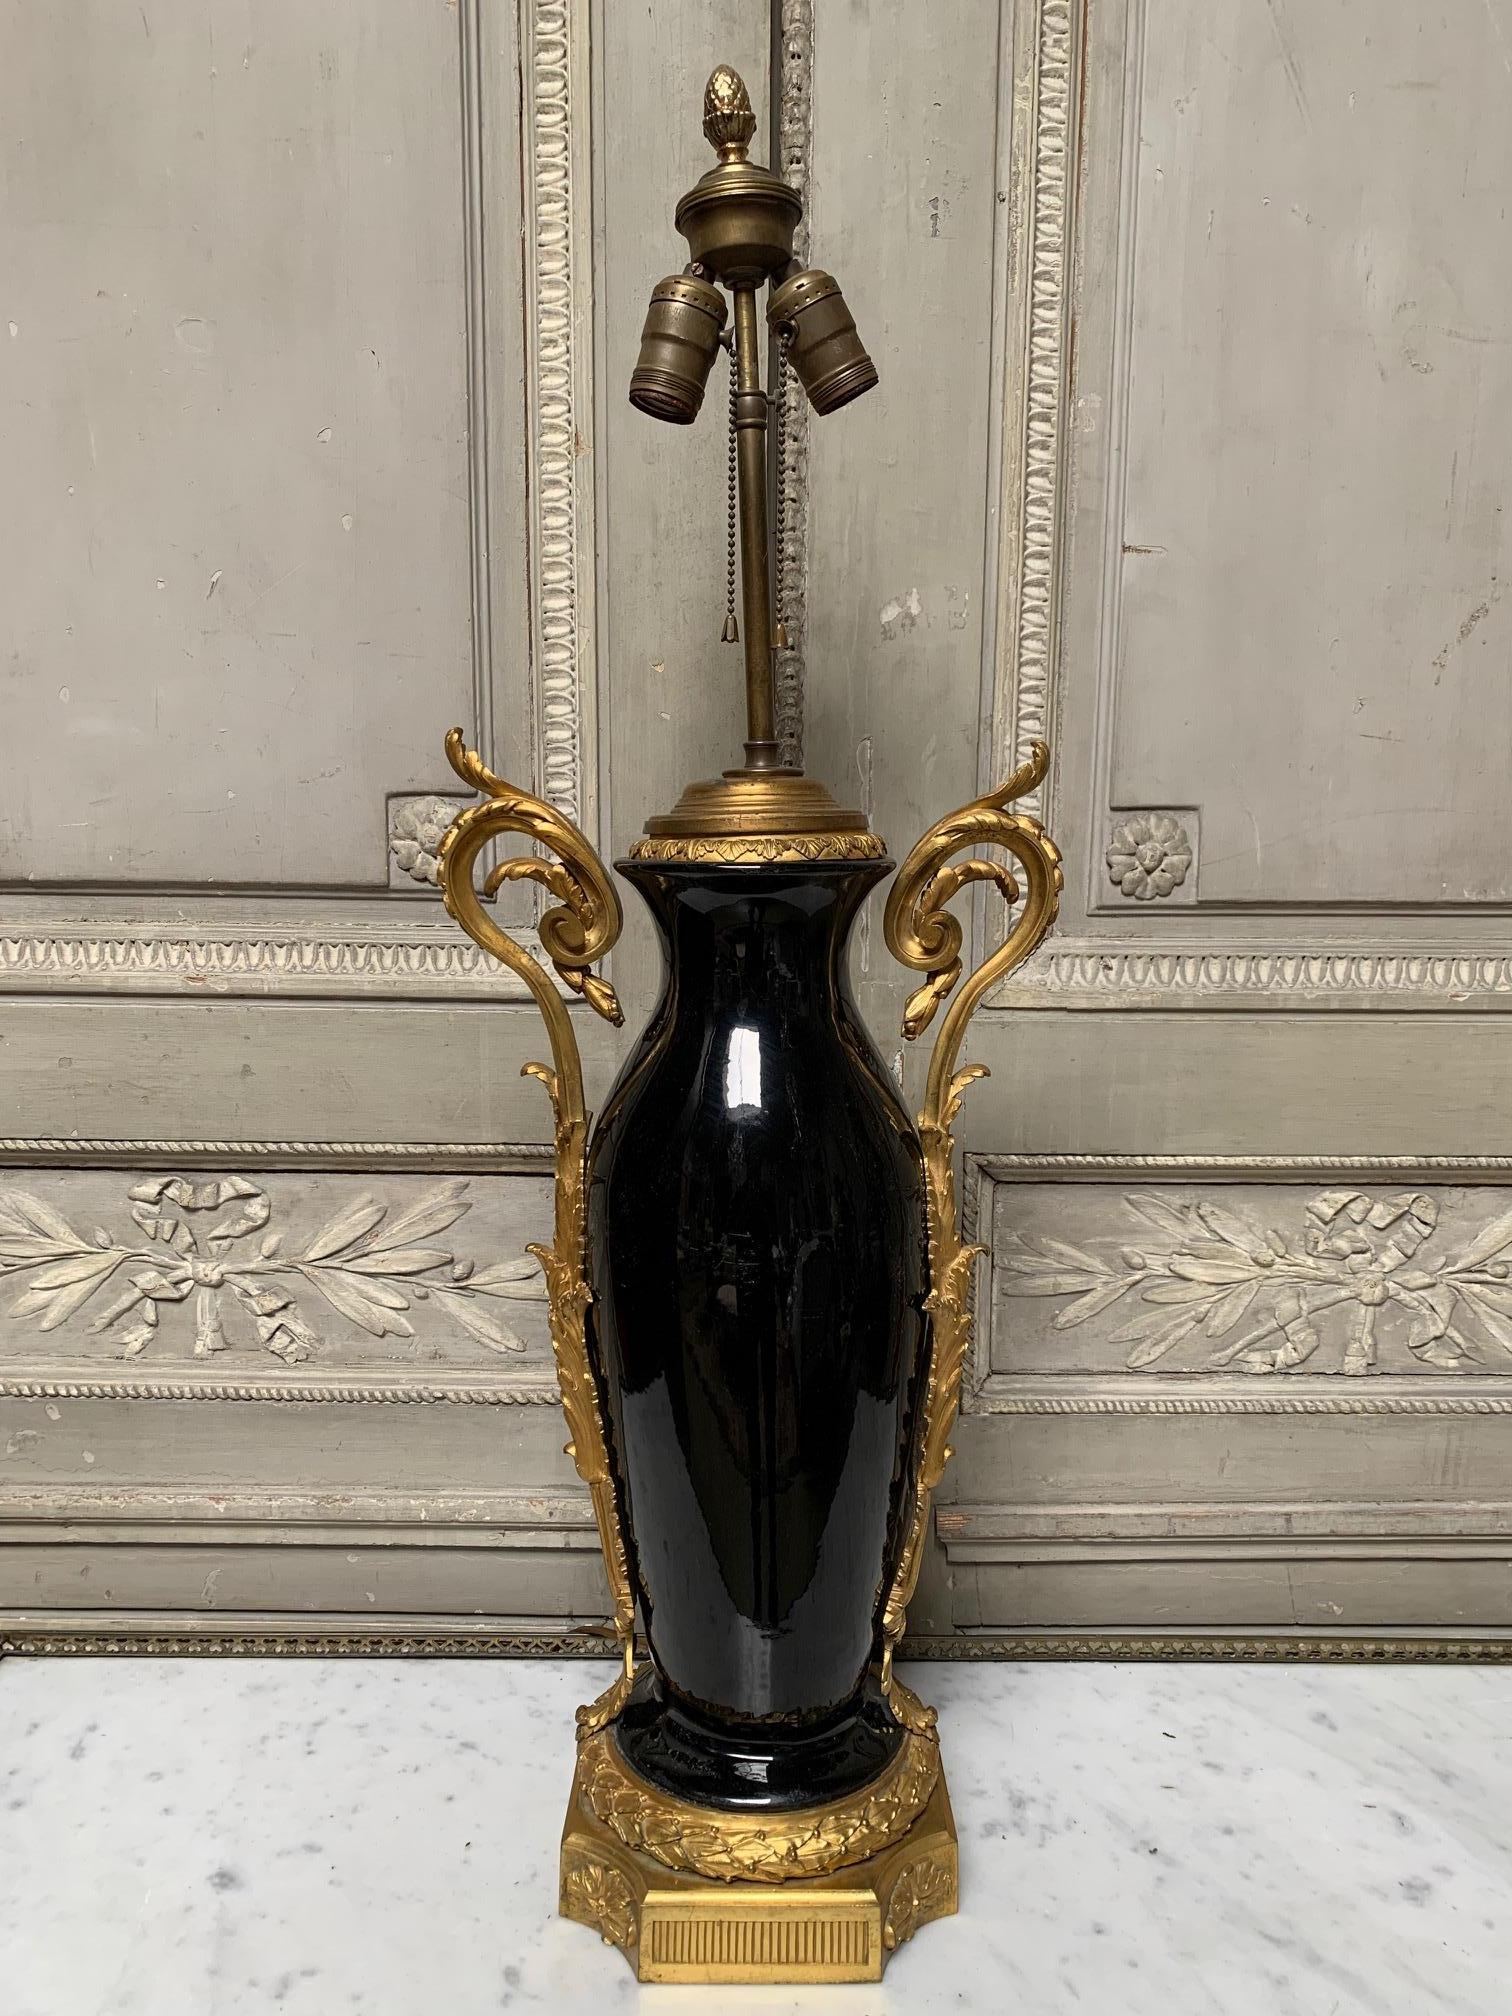 Pied de lampe en porcelaine noire monté sur bronze doré, de style Louis XVI, datant du XIXe siècle. Les raccords en bronze sont d'une qualité et d'une échelle très fines. Il s'agit d'une belle lampe qui conviendrait à une variété d'intérieurs. La